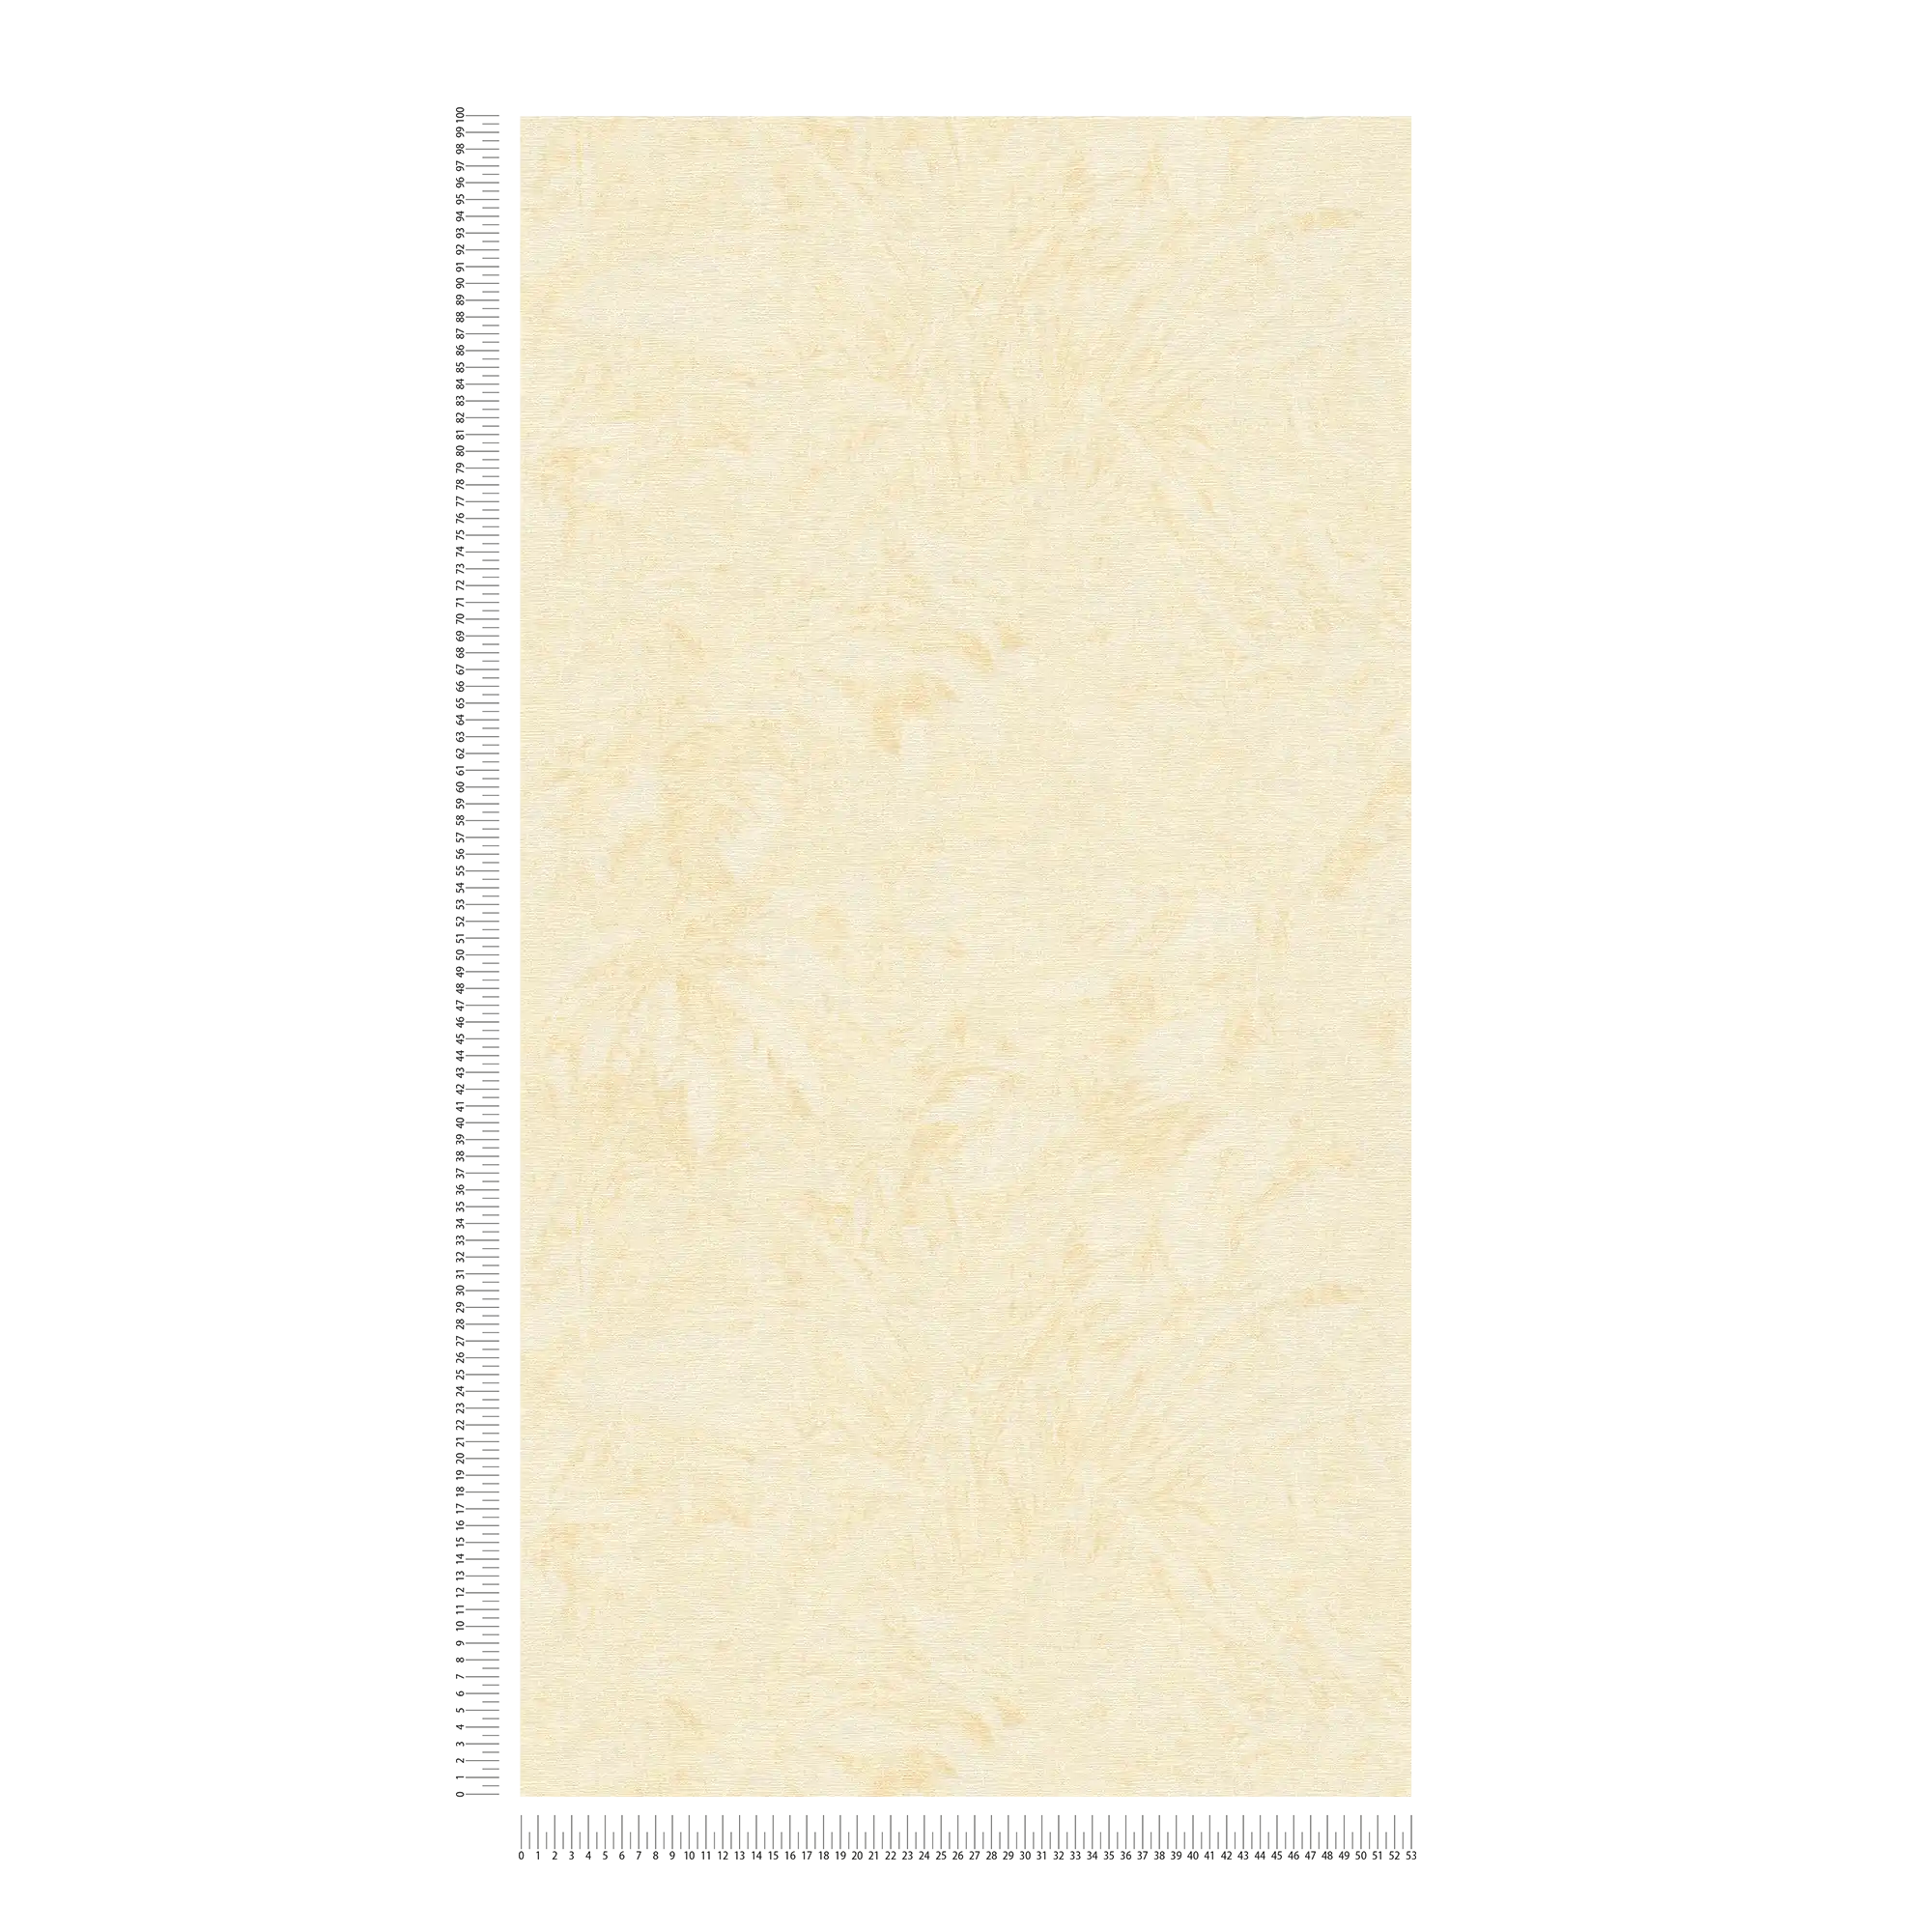             papier peint en papier à motif de feuilles fanées, aspect jungle - beige, jaune, or
        